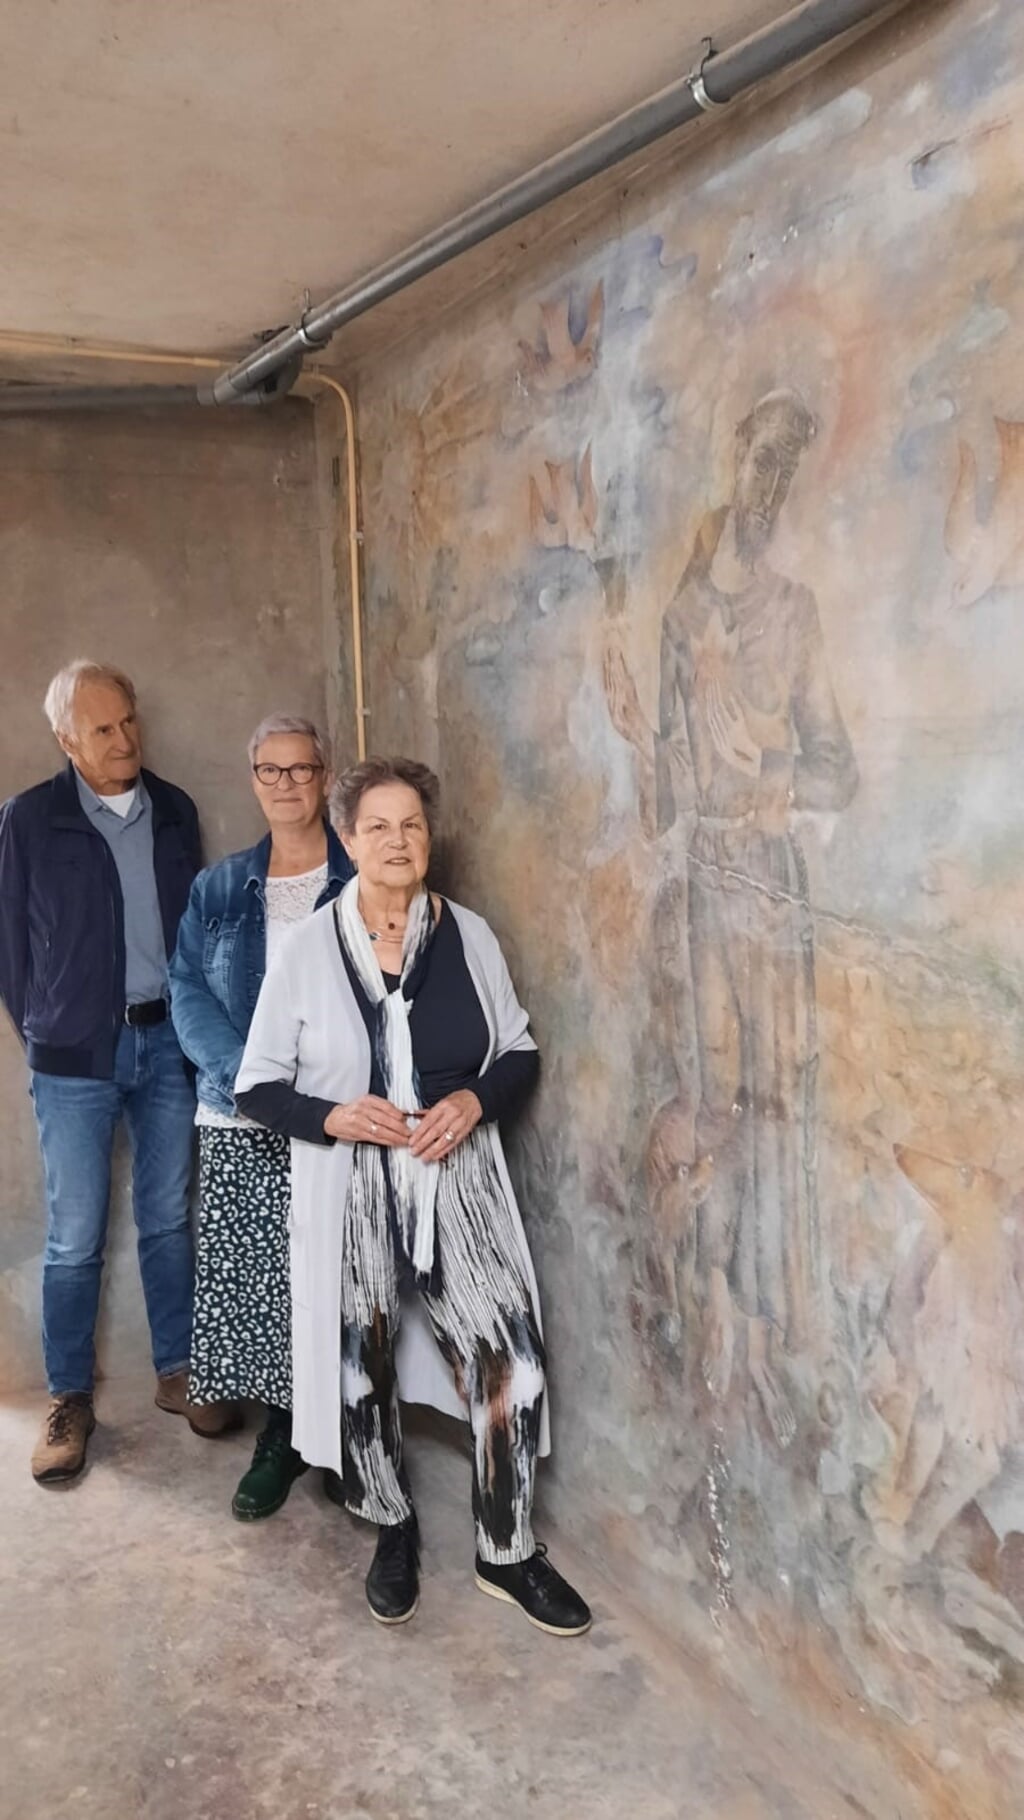 Mevrouw Verhaart-Buijs, haar dochter Kitty en de heer In 't Veld van het Platform Kunst en Cultuur bij de muurschildering in de kelder.